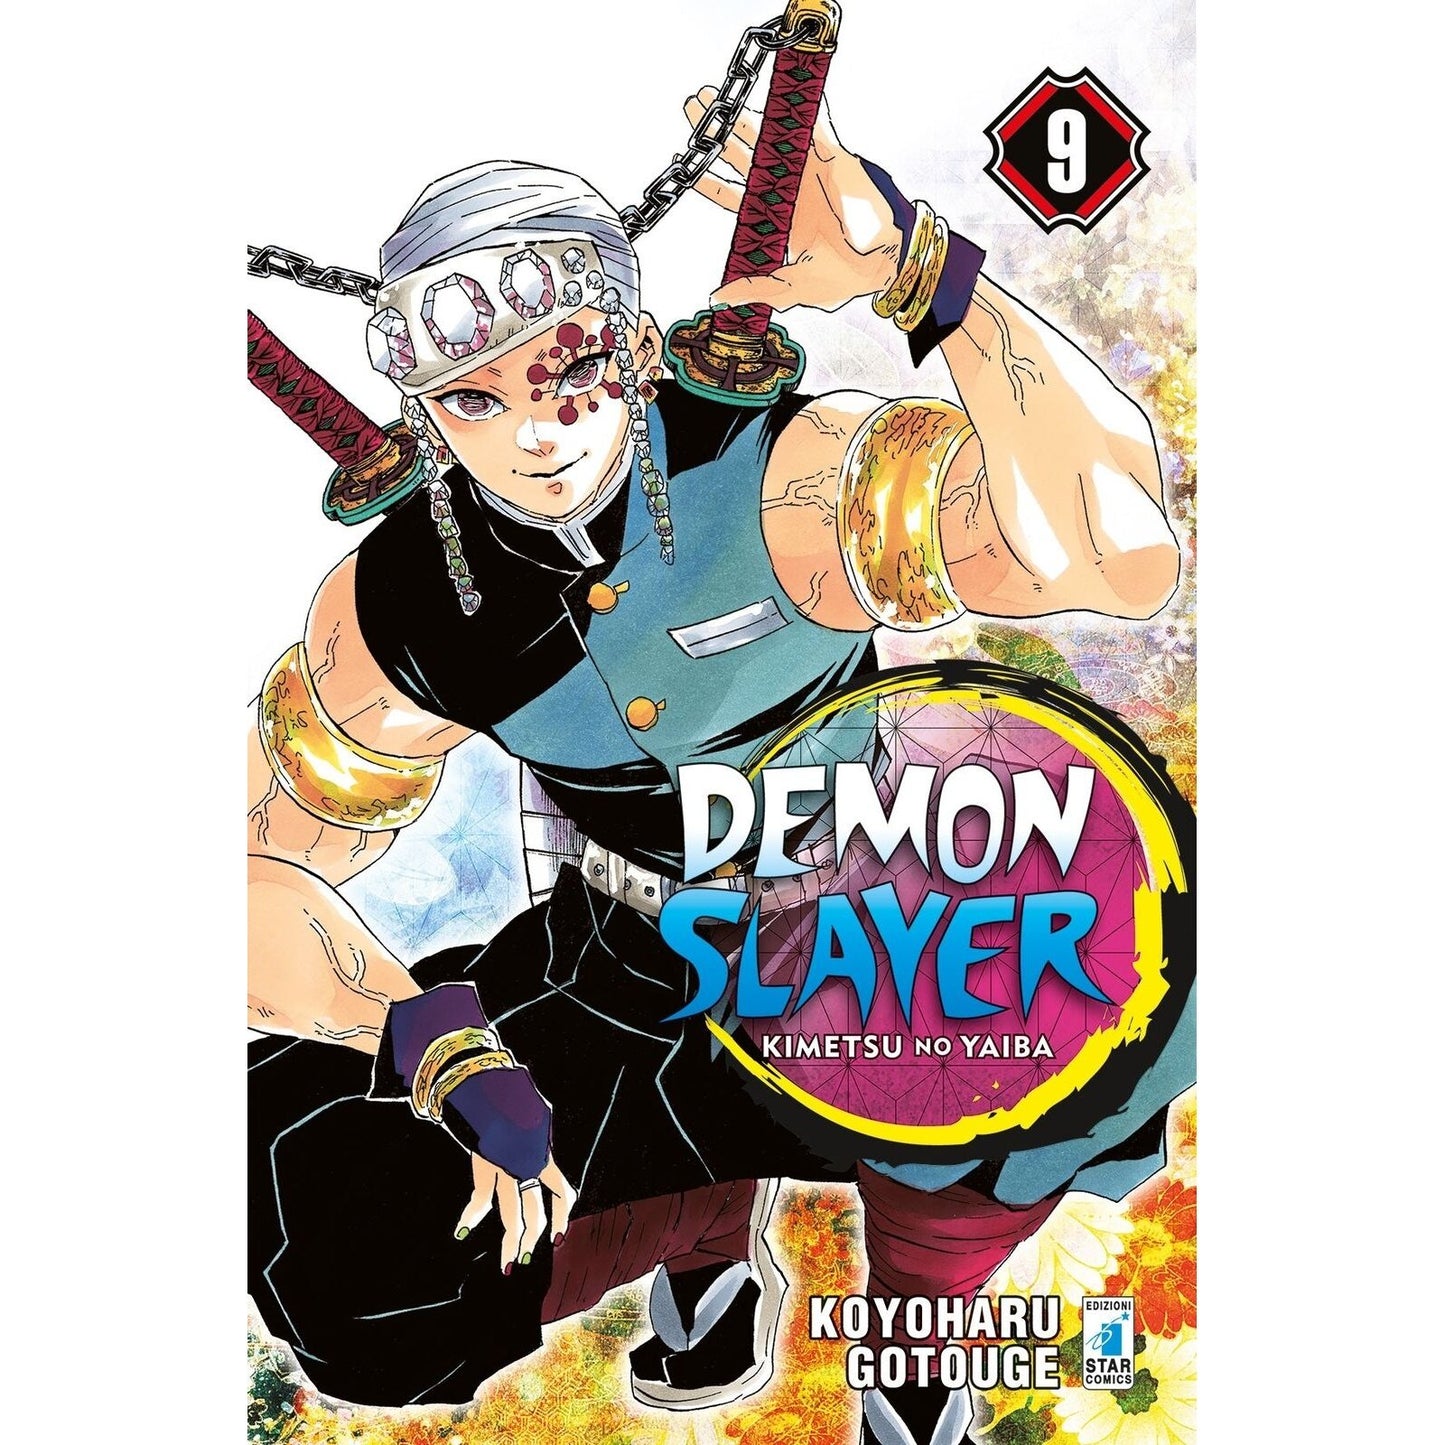 Demon Slayer Kimetsu no Yaiba 09 ITA nerd-pug